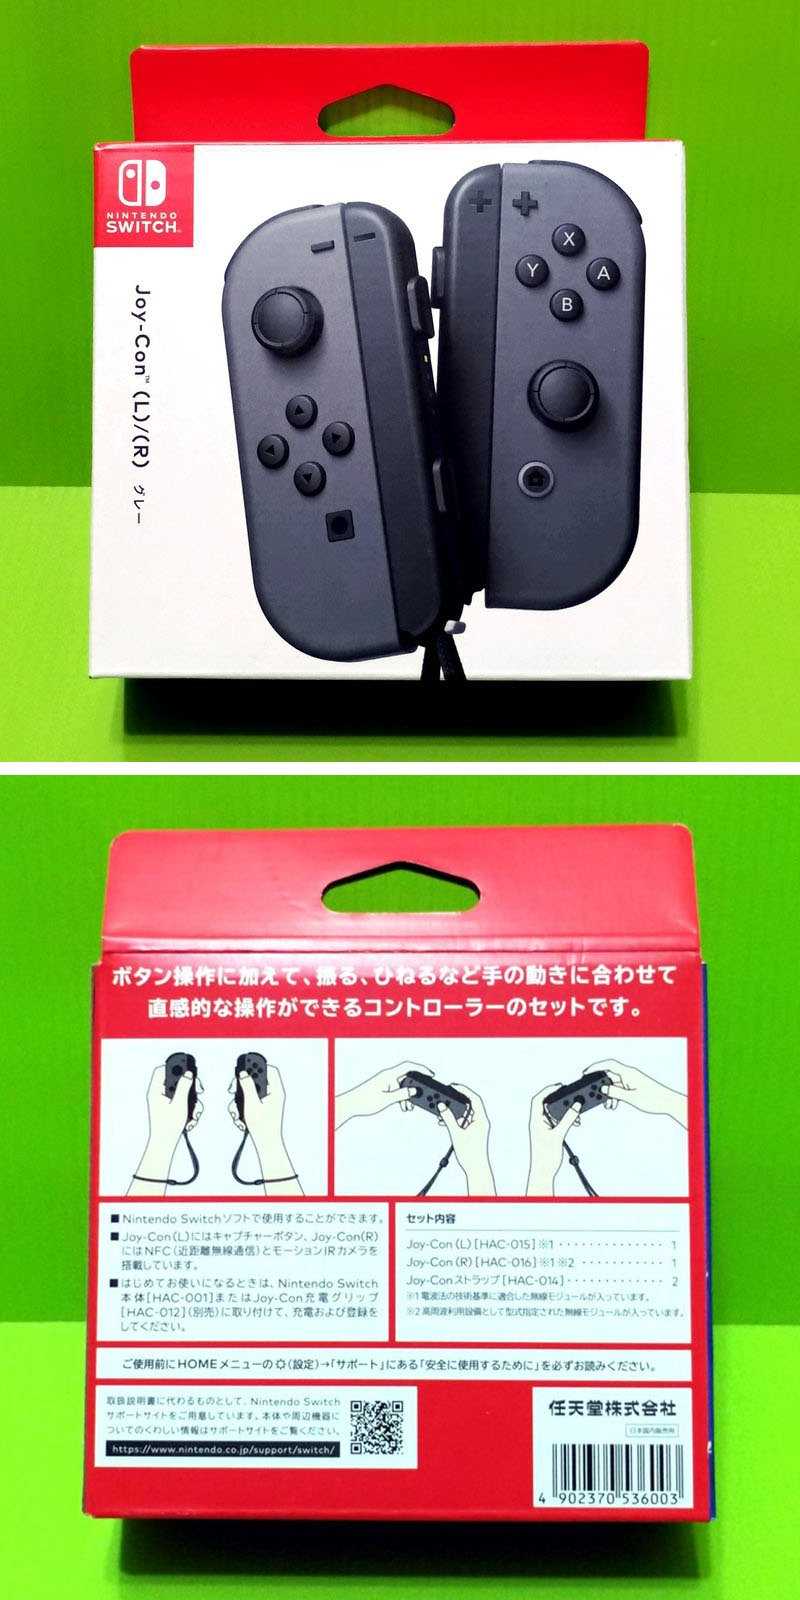 任天堂Nintendo Switch Joy-Con (灰色)原廠左右手把